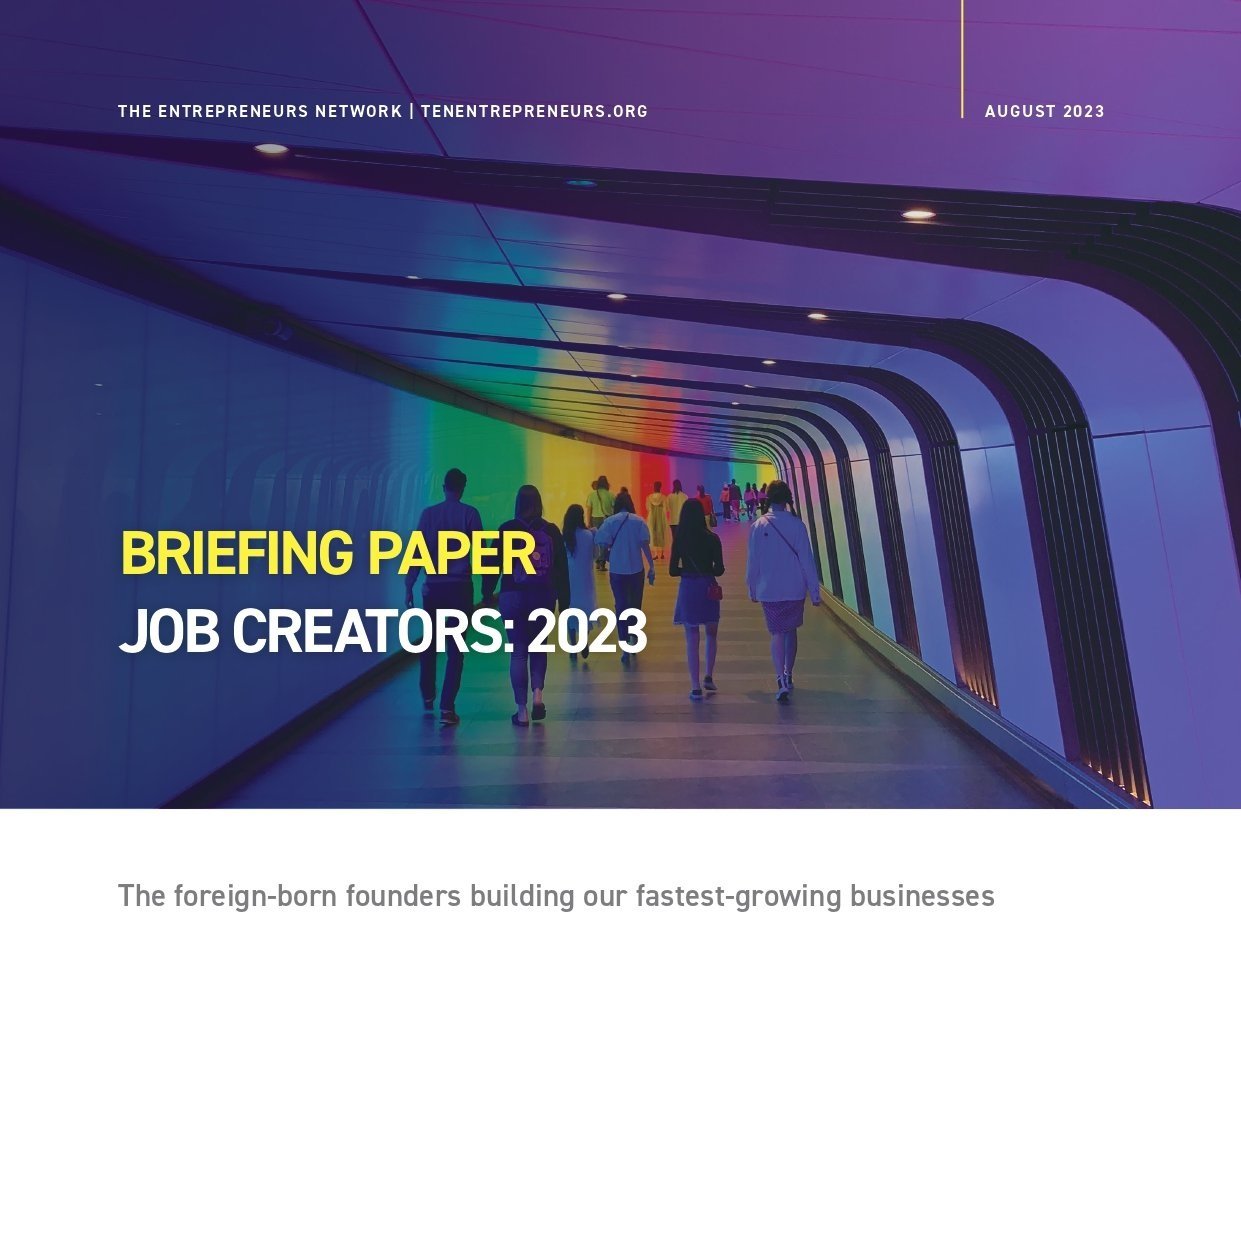 Job Creators 2023